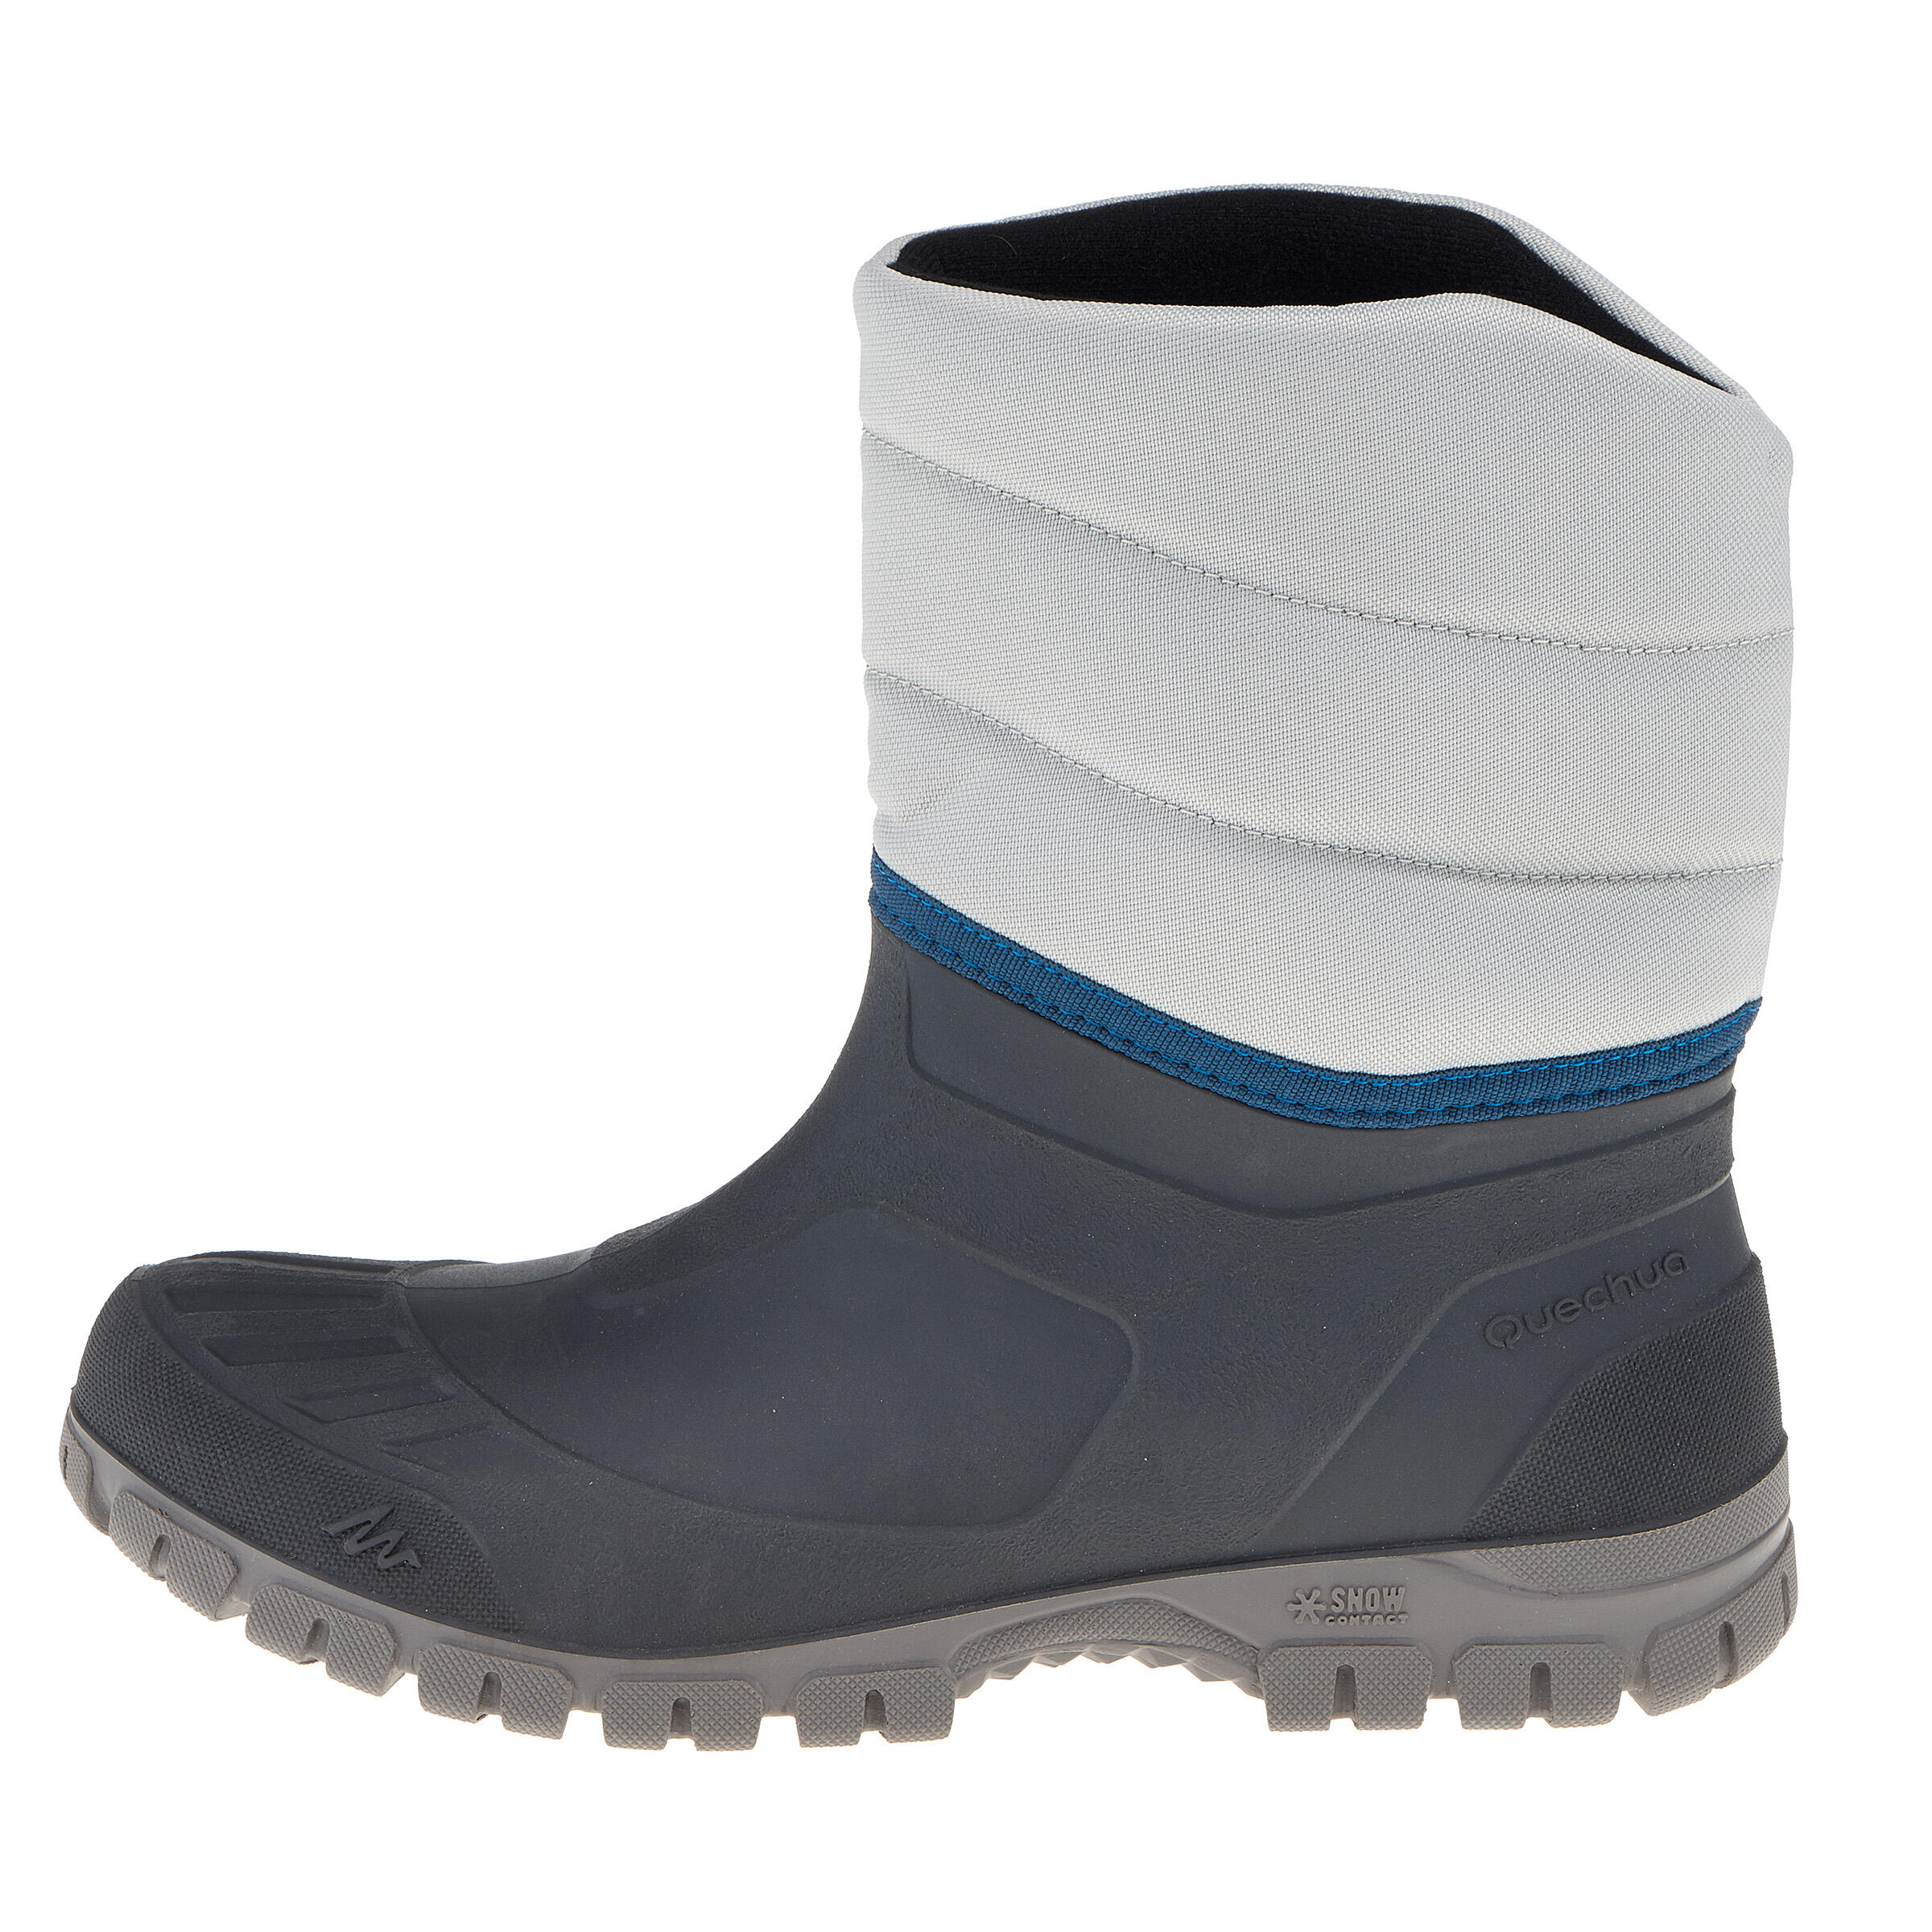 Arpenaz 50 Warm waterproof men's hiking boots - Grey 3/14